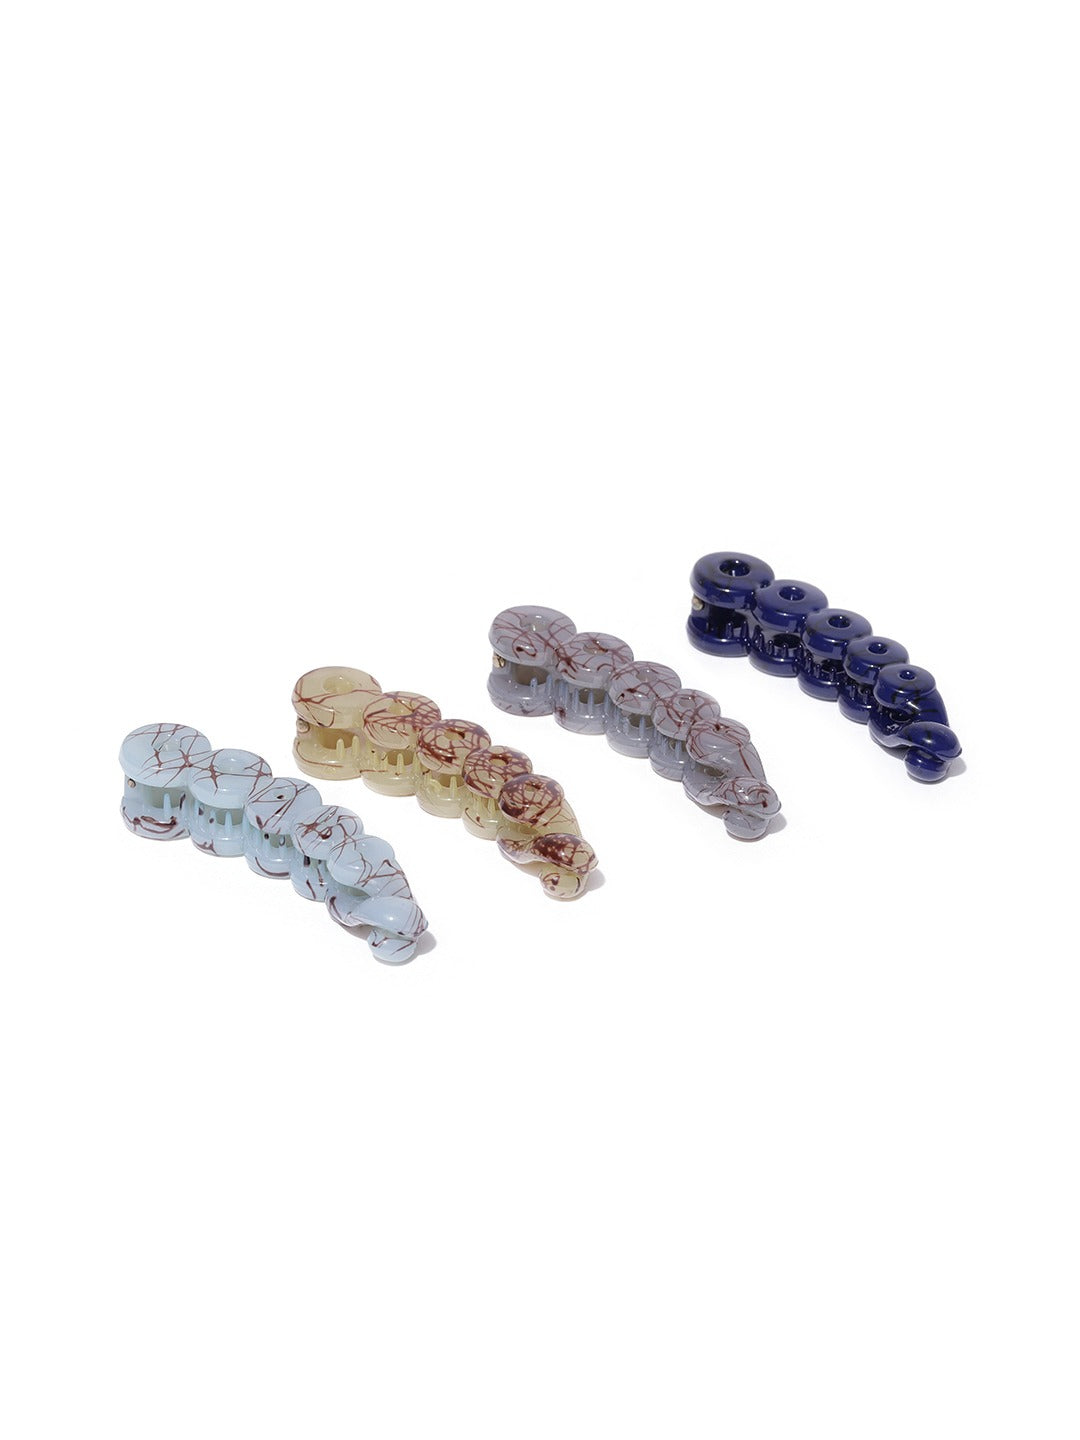 Blueberry KIDS set of 4 resin banana hair clips